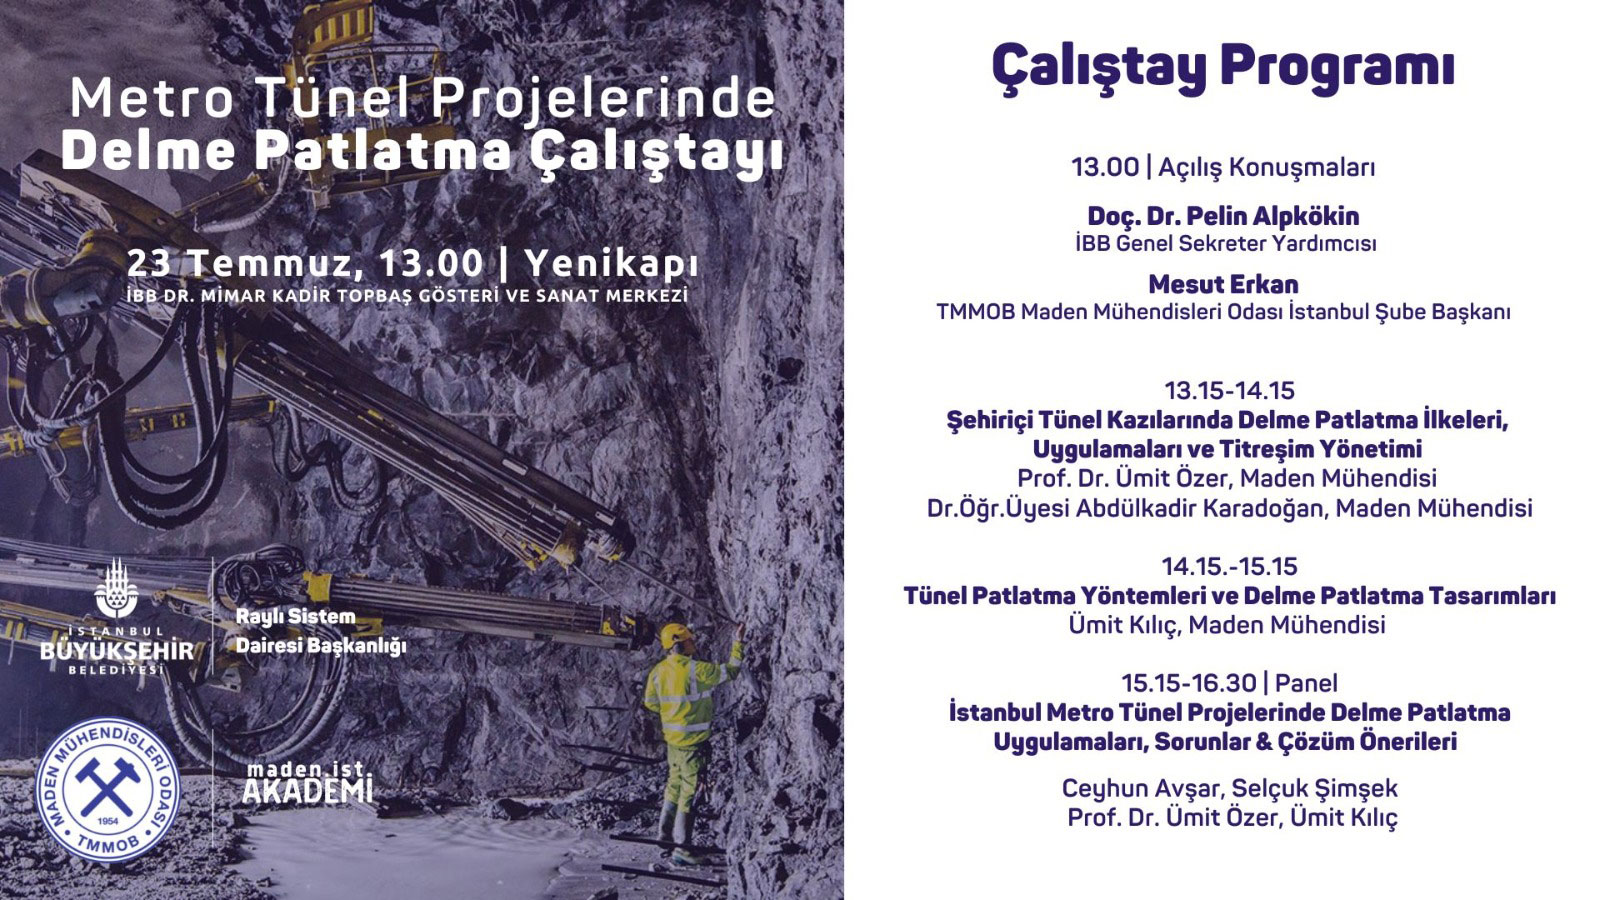 Metro Tünel Projelerinde Delme Patlatma Çalıştayı – 23 Temmuz Cumartesi İstanbul